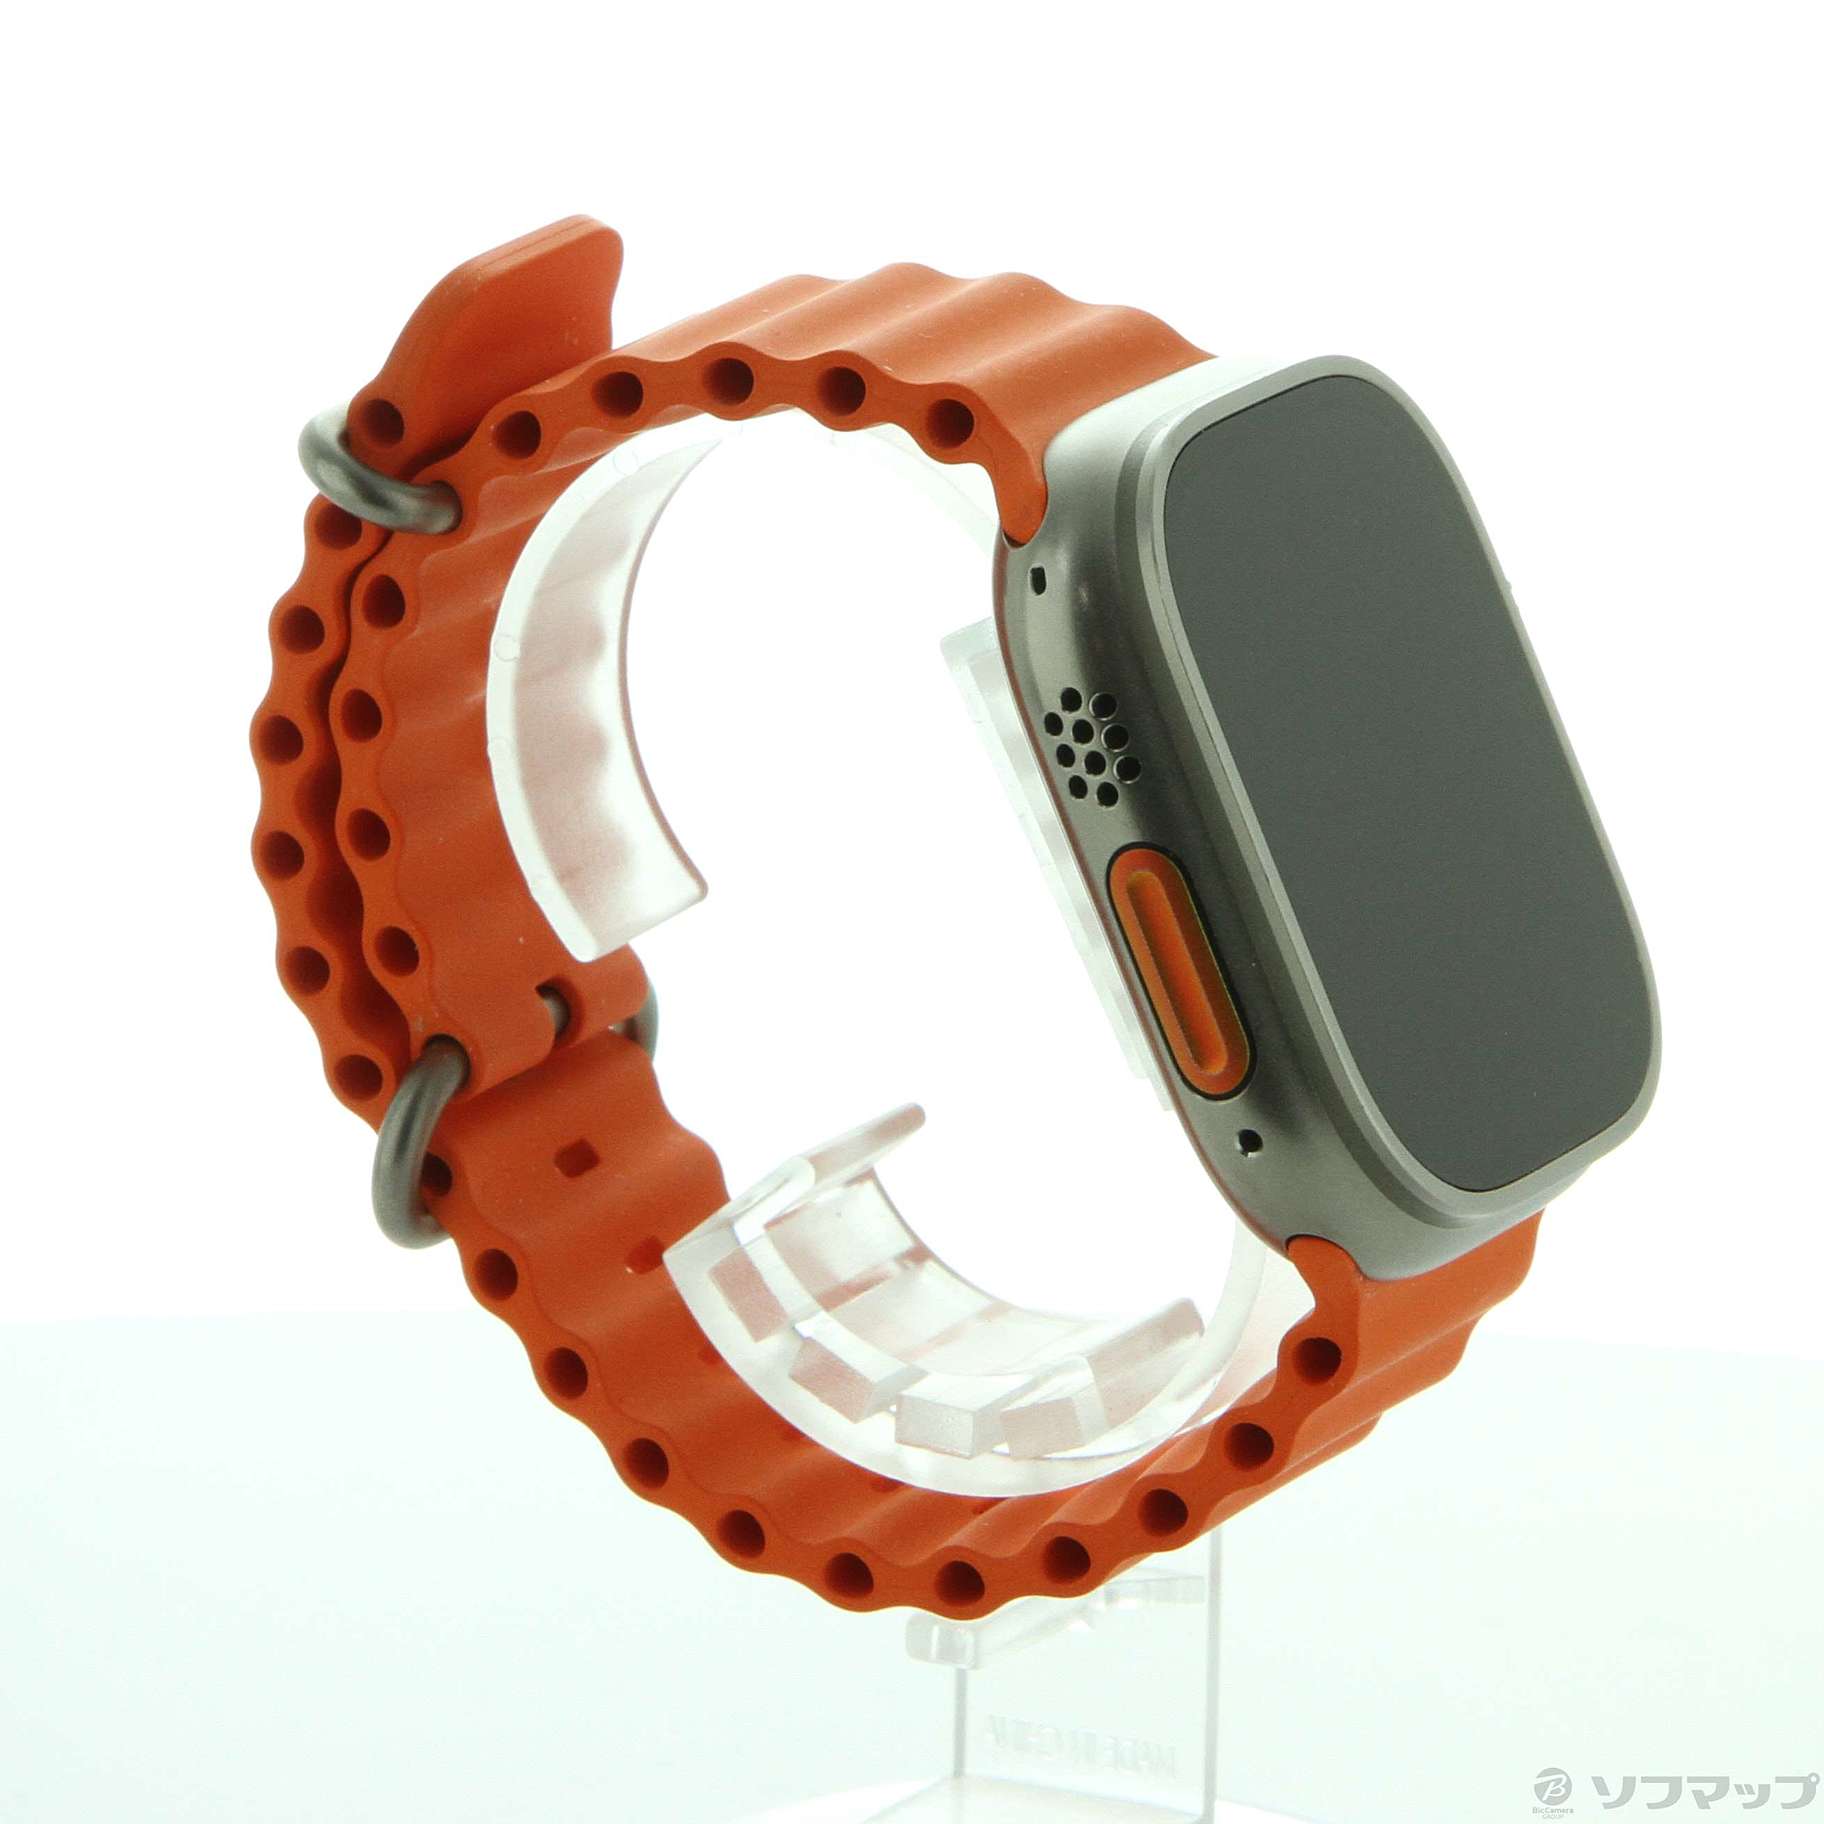 Ultra Watch オレンジオーシャンバンド 【新品】【純正】Apple